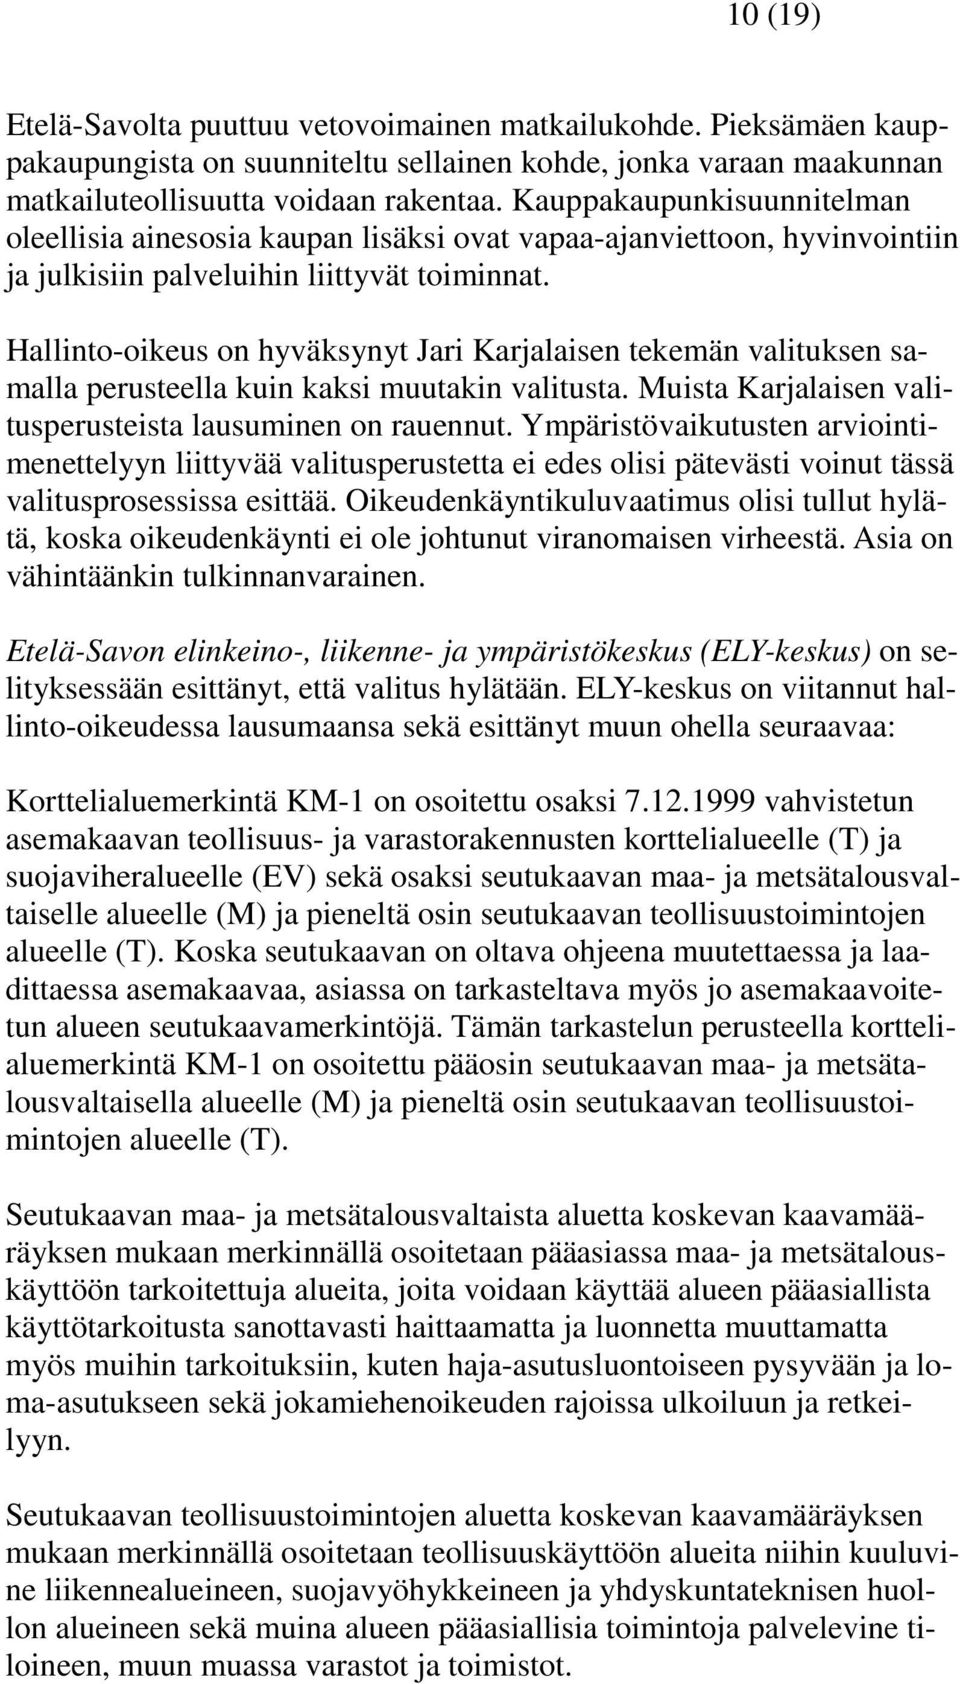 Hallinto-oikeus on hyväksynyt Jari Karjalaisen tekemän valituksen samalla perusteella kuin kaksi muutakin valitusta. Muista Karjalaisen valitusperusteista lausuminen on rauennut.